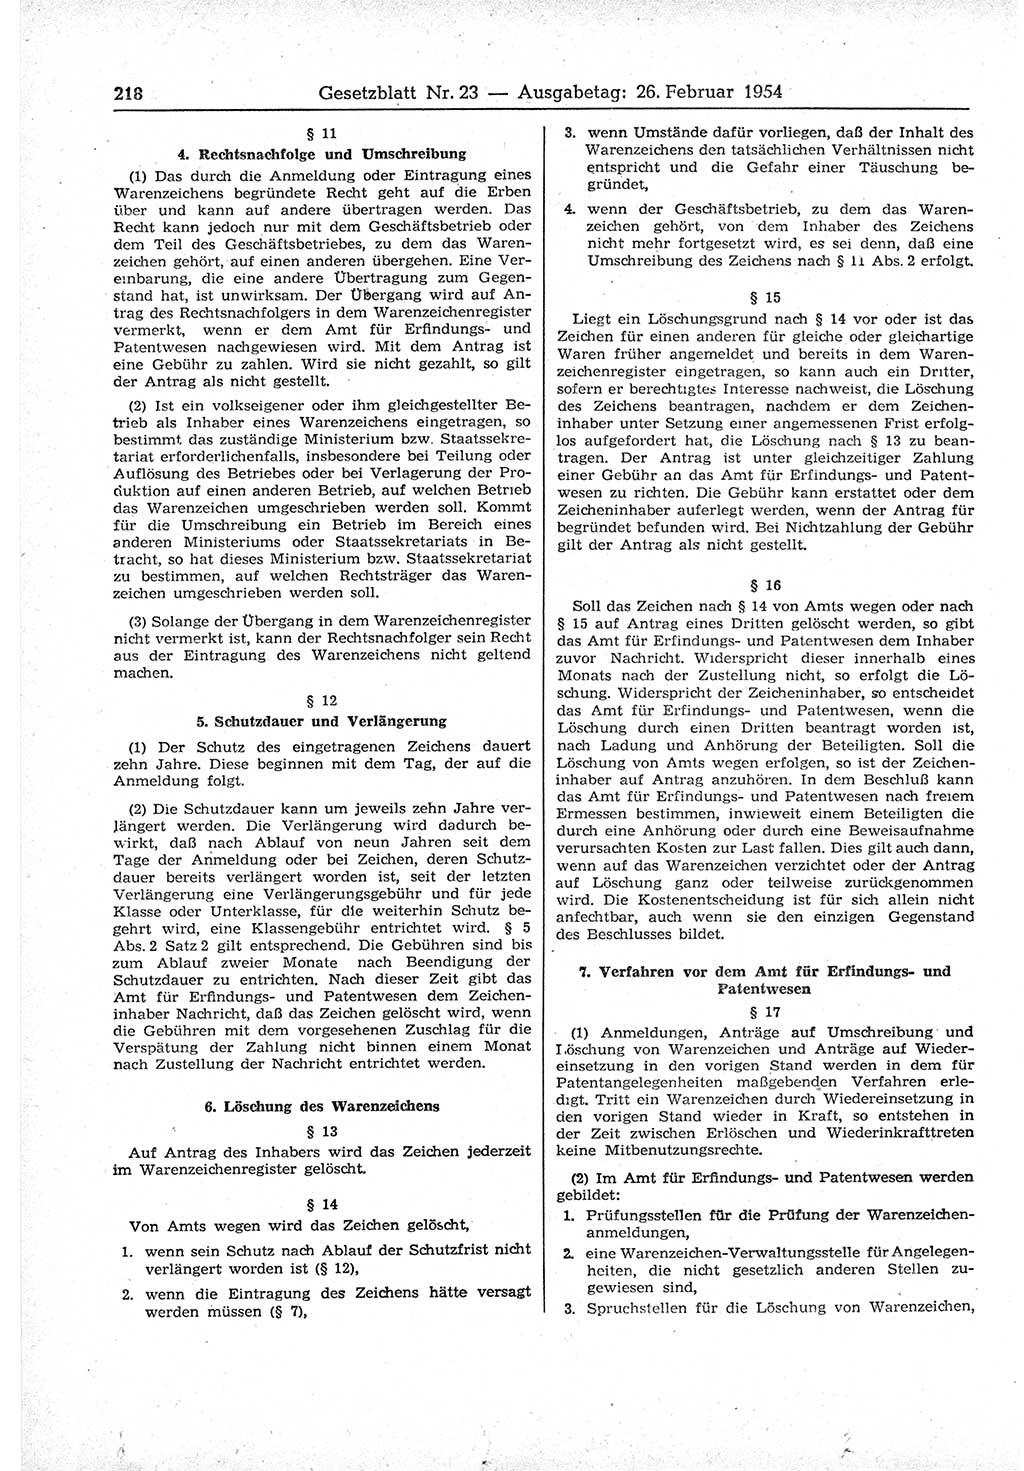 Gesetzblatt (GBl.) der Deutschen Demokratischen Republik (DDR) 1954, Seite 218 (GBl. DDR 1954, S. 218)